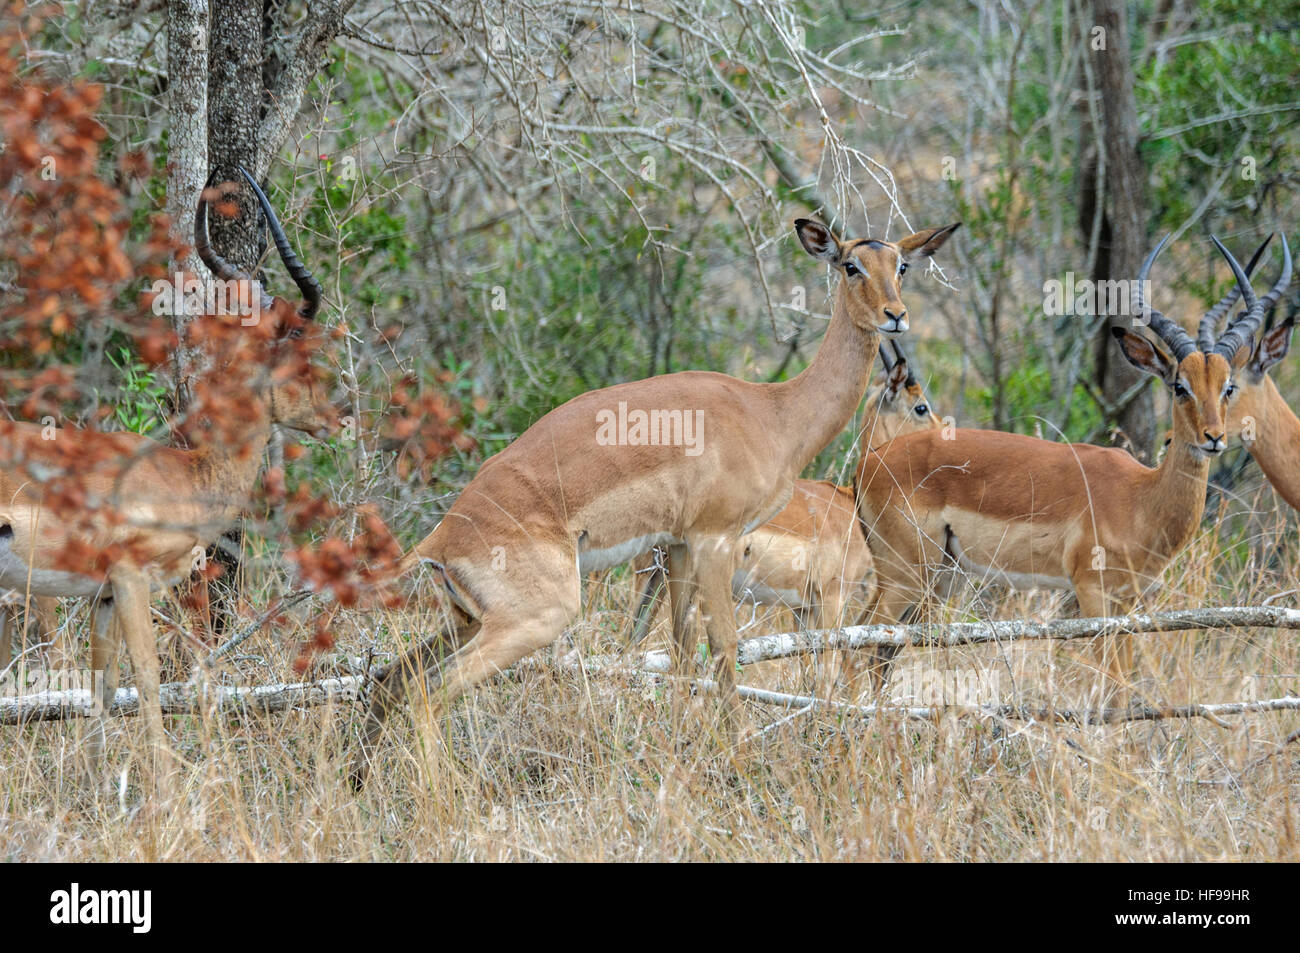 Impala (Aepyceros melampus), South Africa, Africa Stock Photo